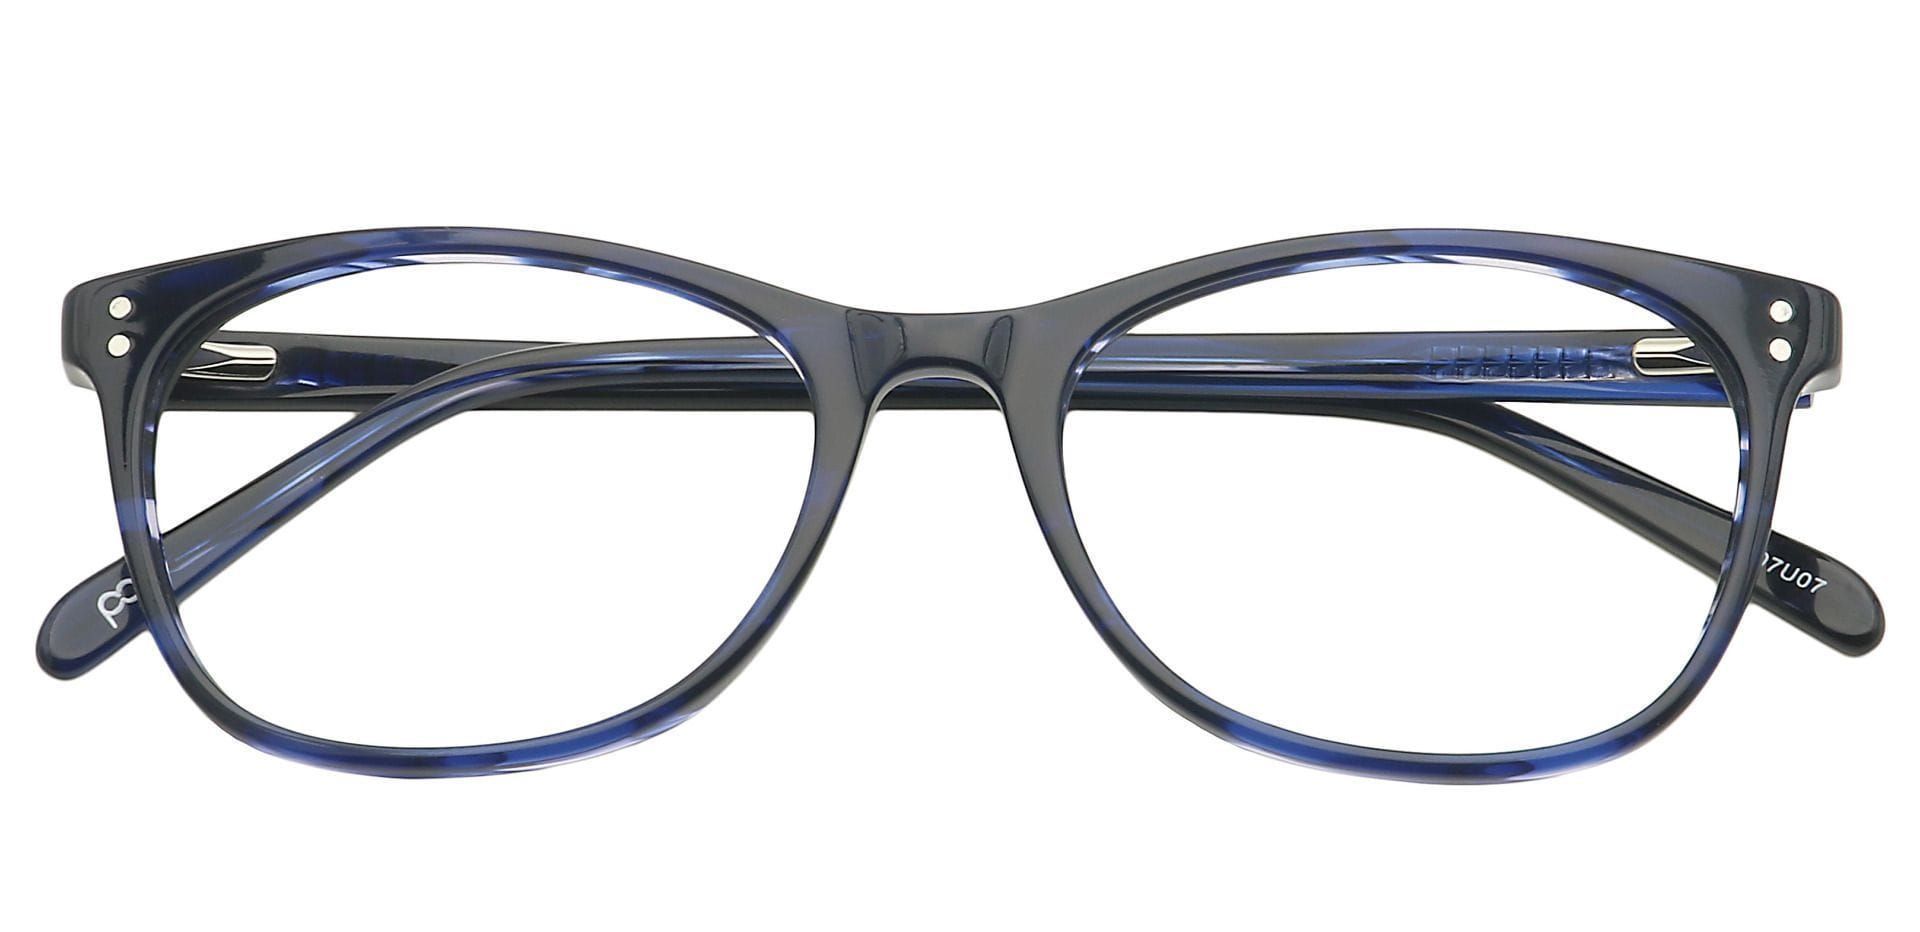 Kace Oval Prescription Glasses Brown Women S Eyeglasses Payne Glasses